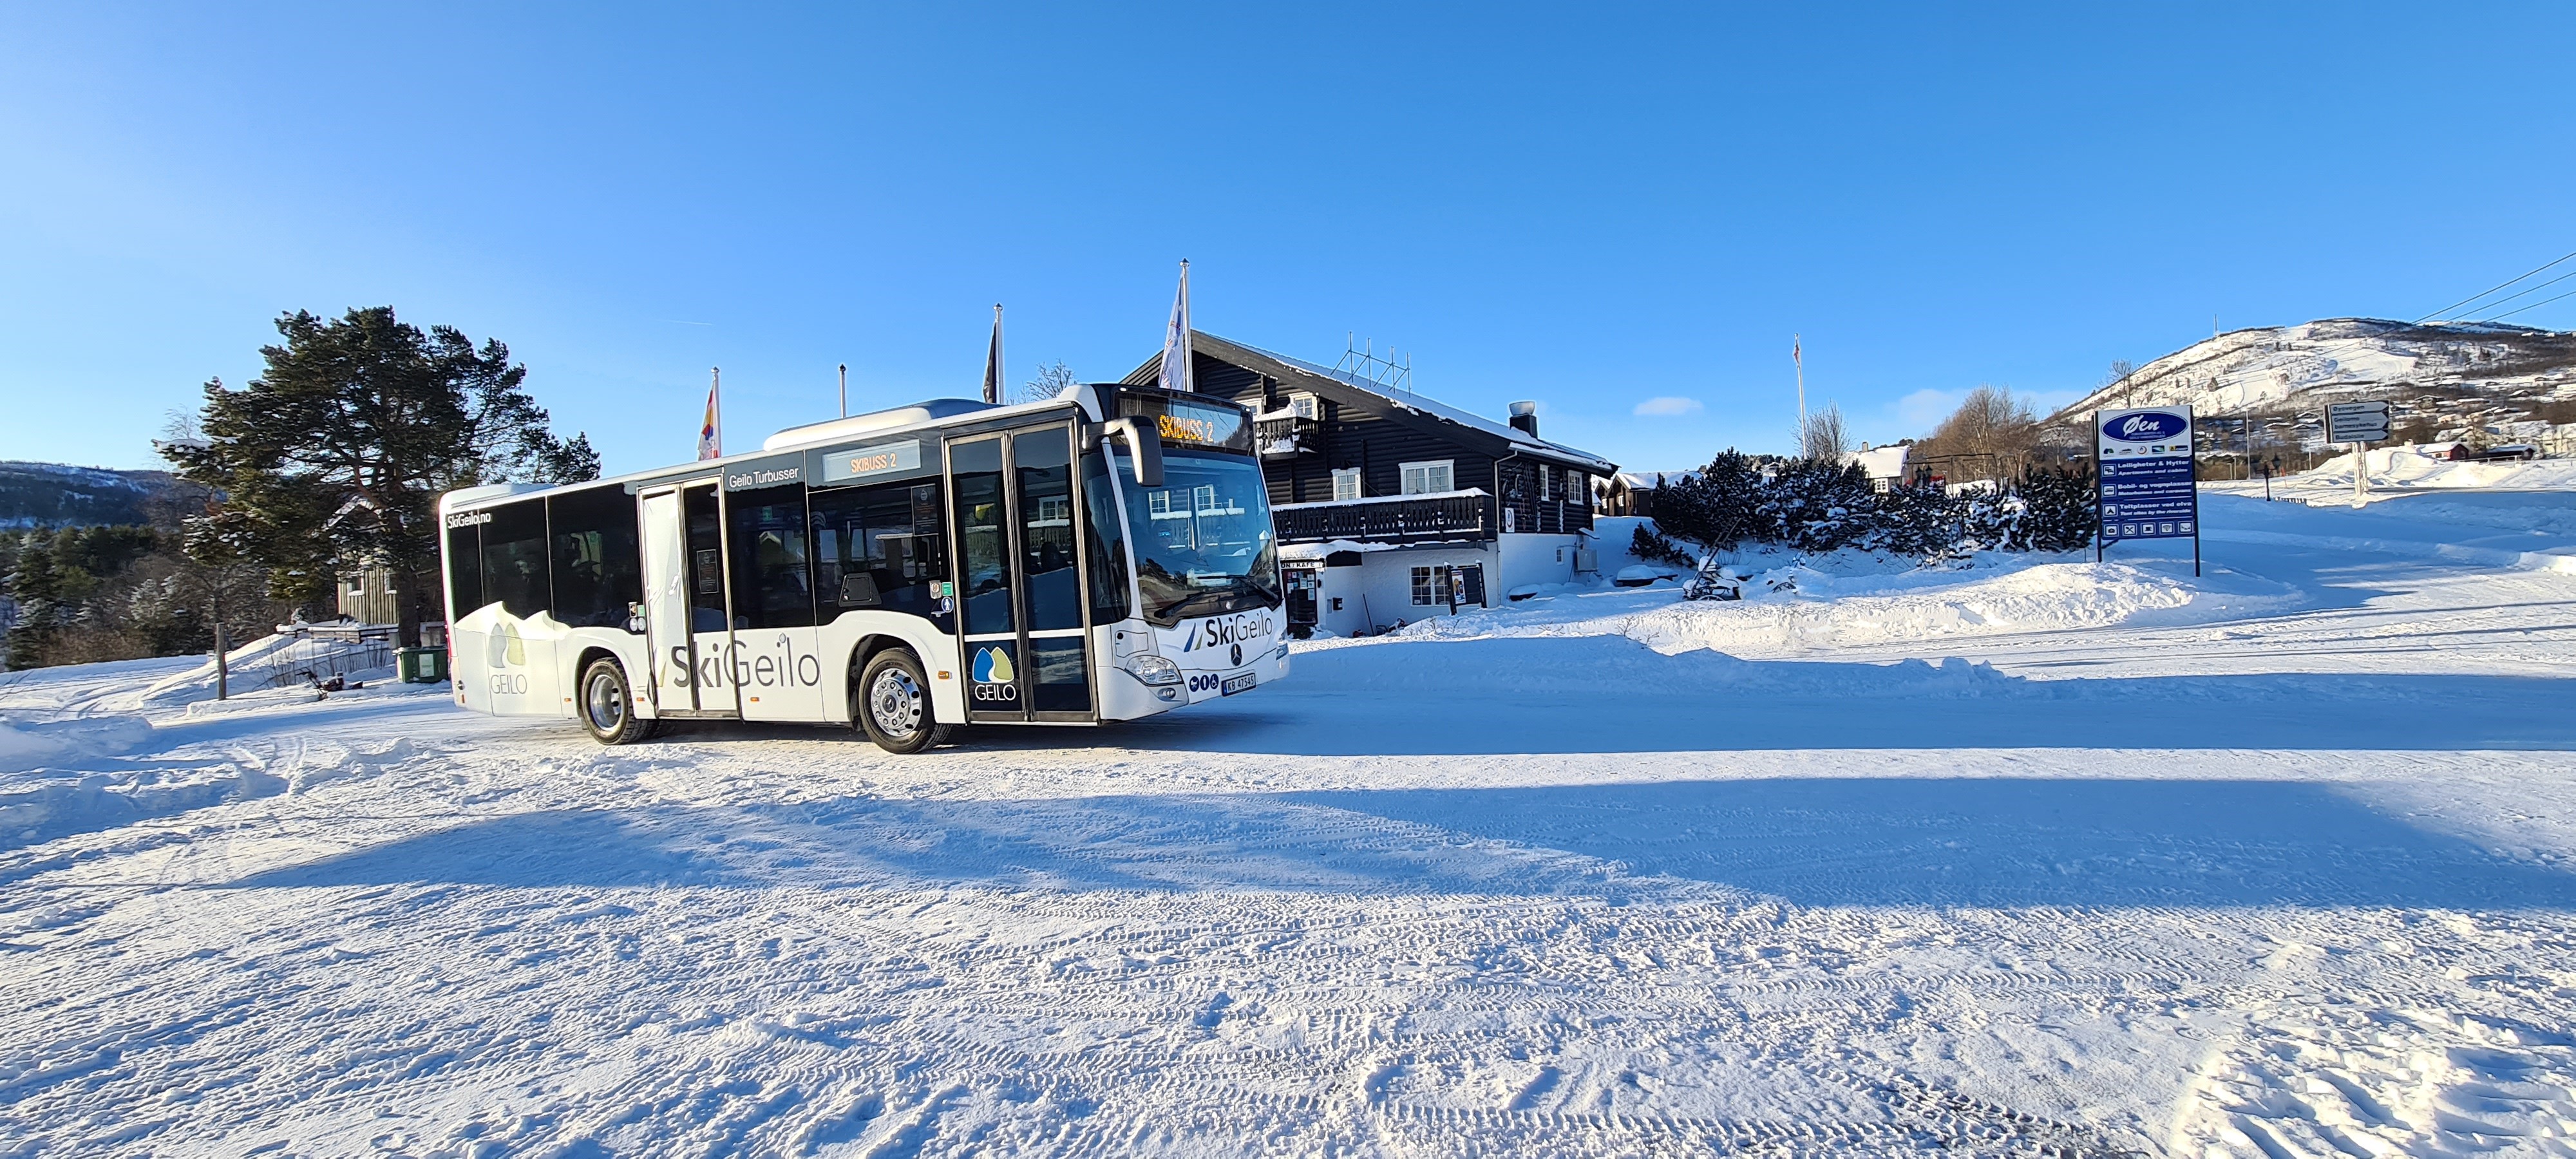 skibus øen turistsenter geilo reception winter snow